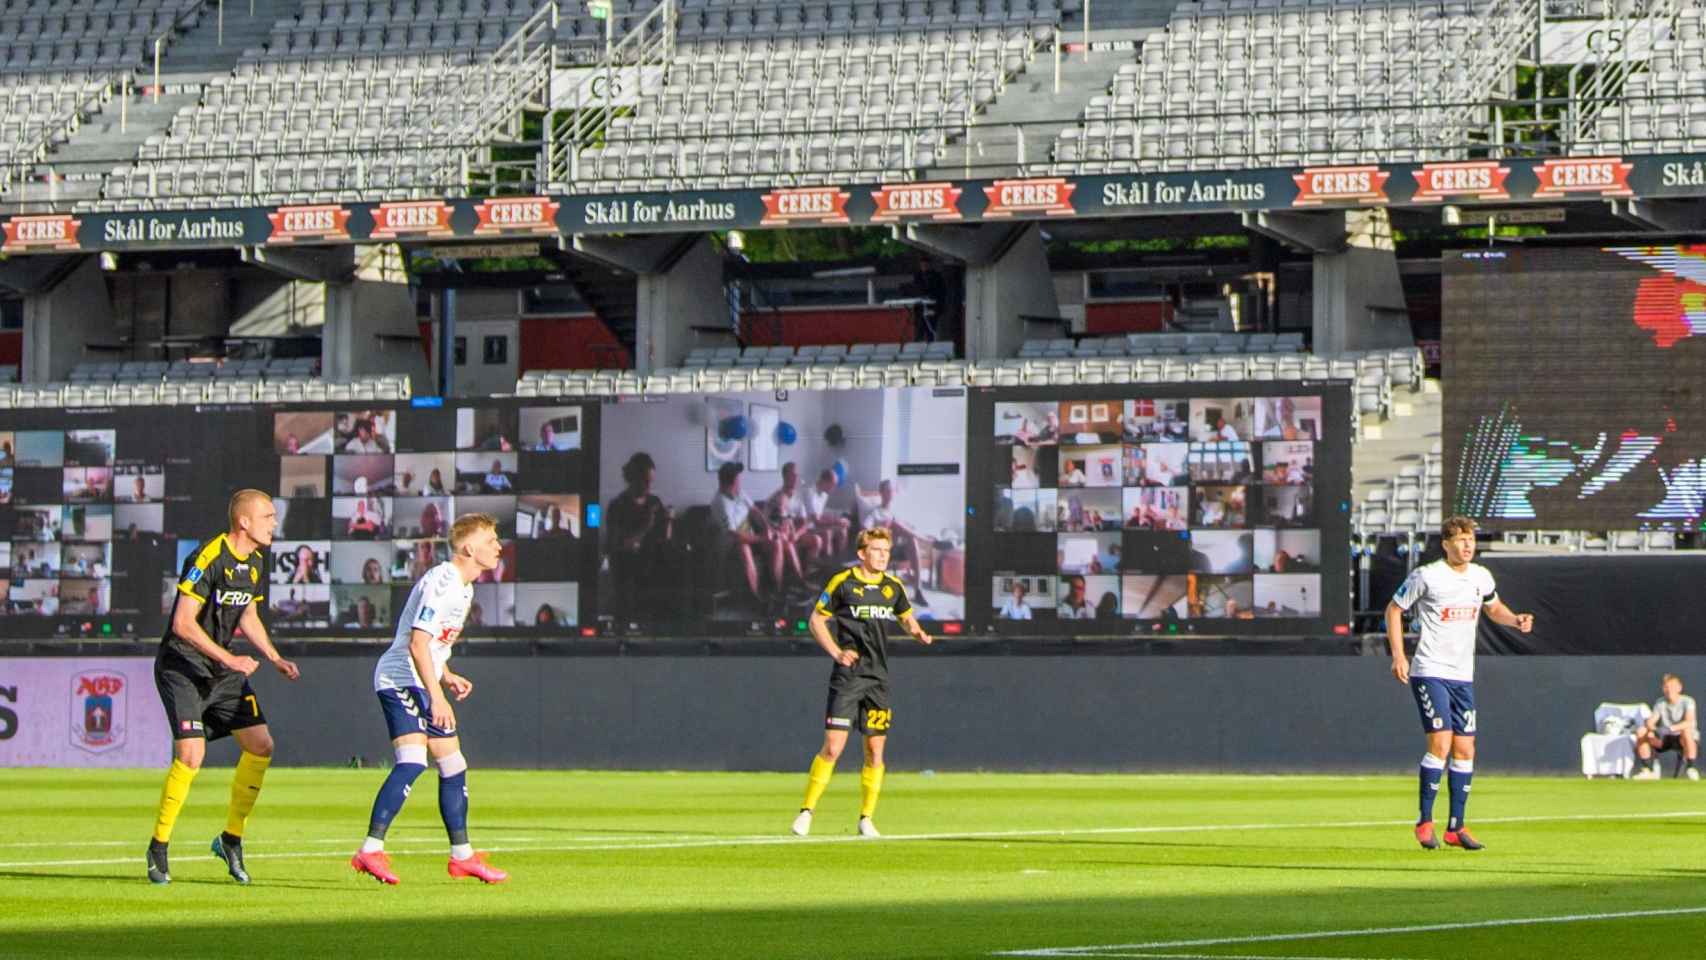 Los aficionados, presentes en el AGF Aarhus - Randers FC gracias a una Grada Virtual